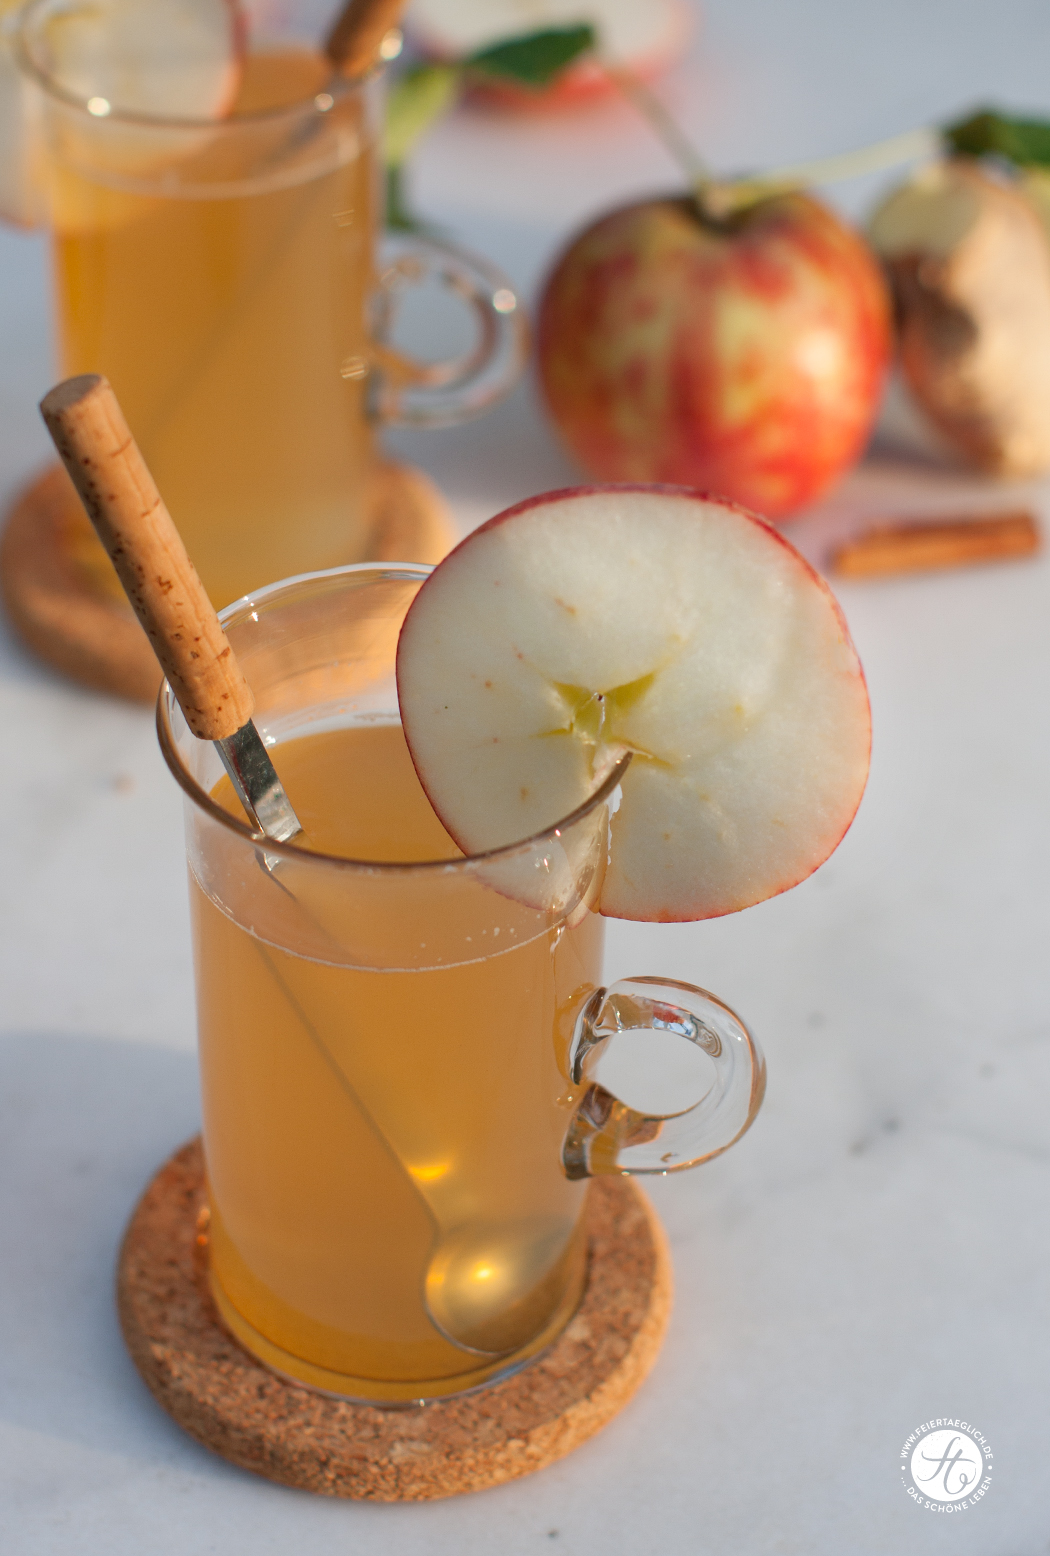 #SuperfoodSamstag mit einem Rezept für Ingwer-Apfel-Zimt Tee von feiertaeglich.de